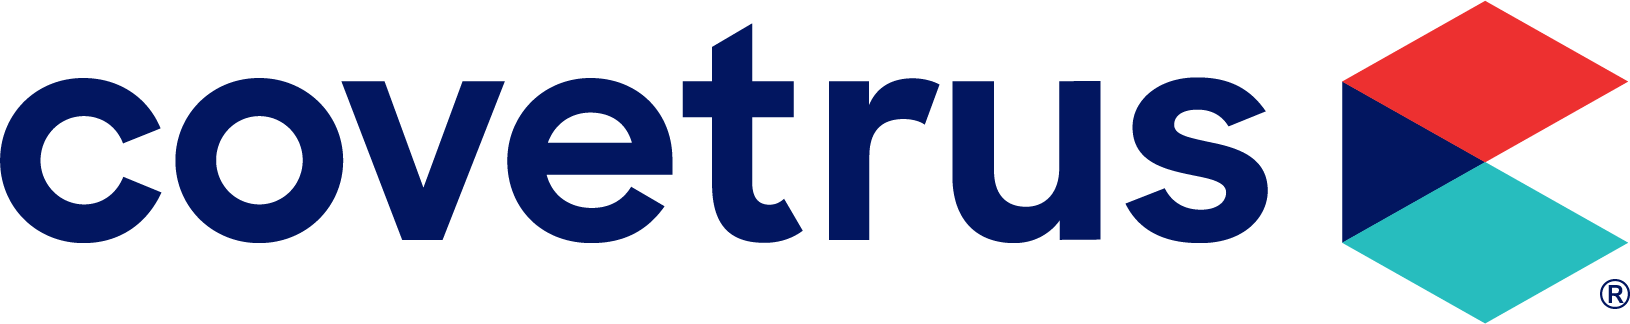 Covetrus_Logo_rgb_R